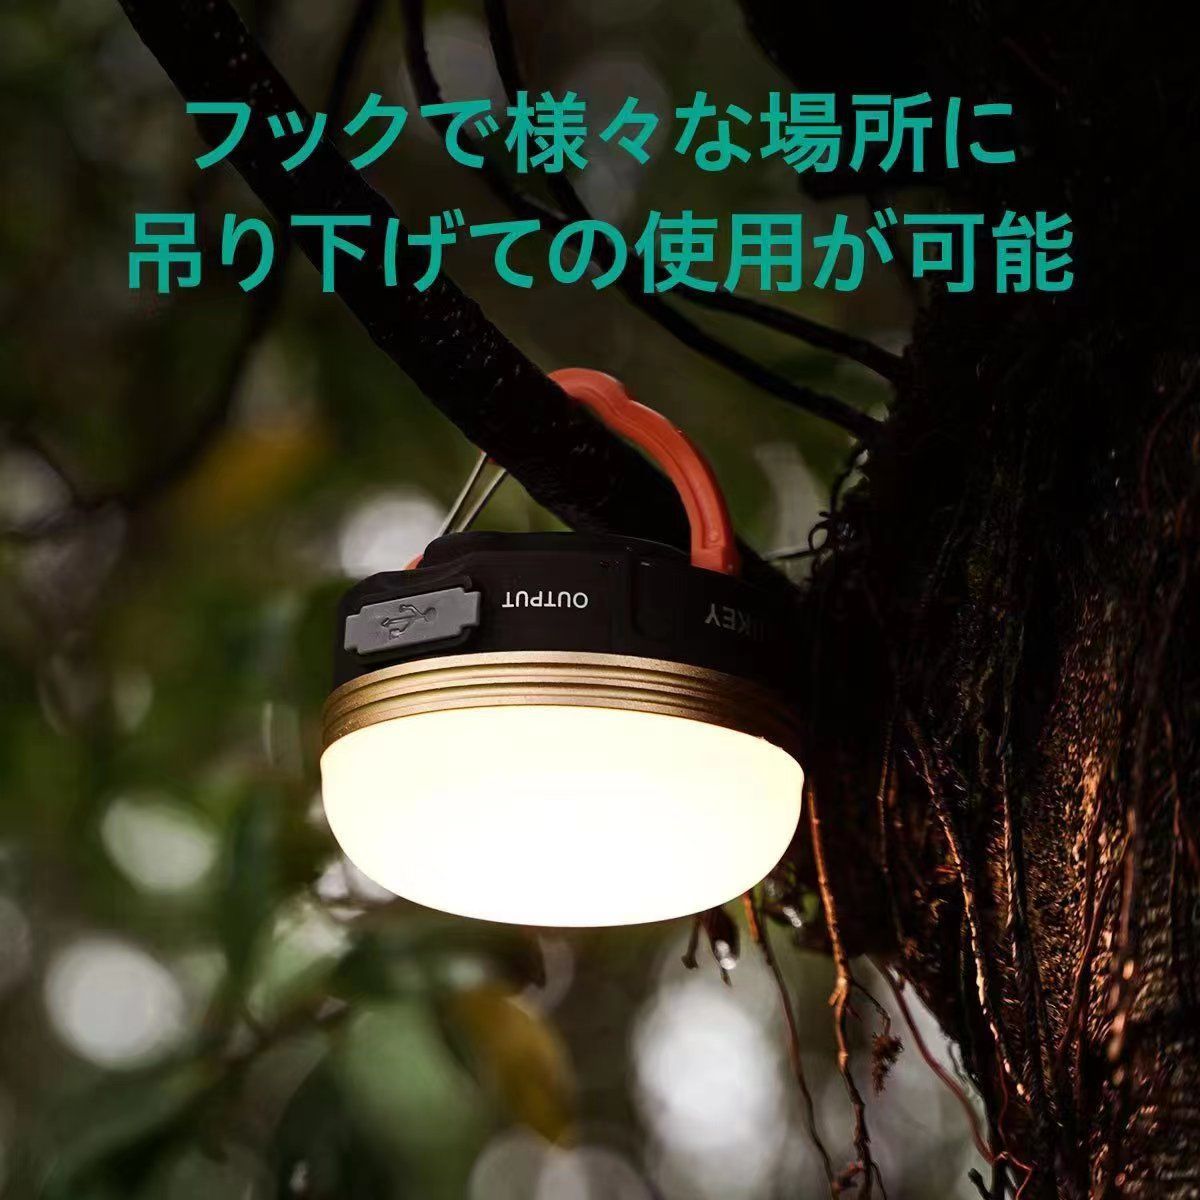 LEDランタン 懐中電灯 充電式 3つモード 防水キャンプ 登山 防災高輝度 - メルカリ